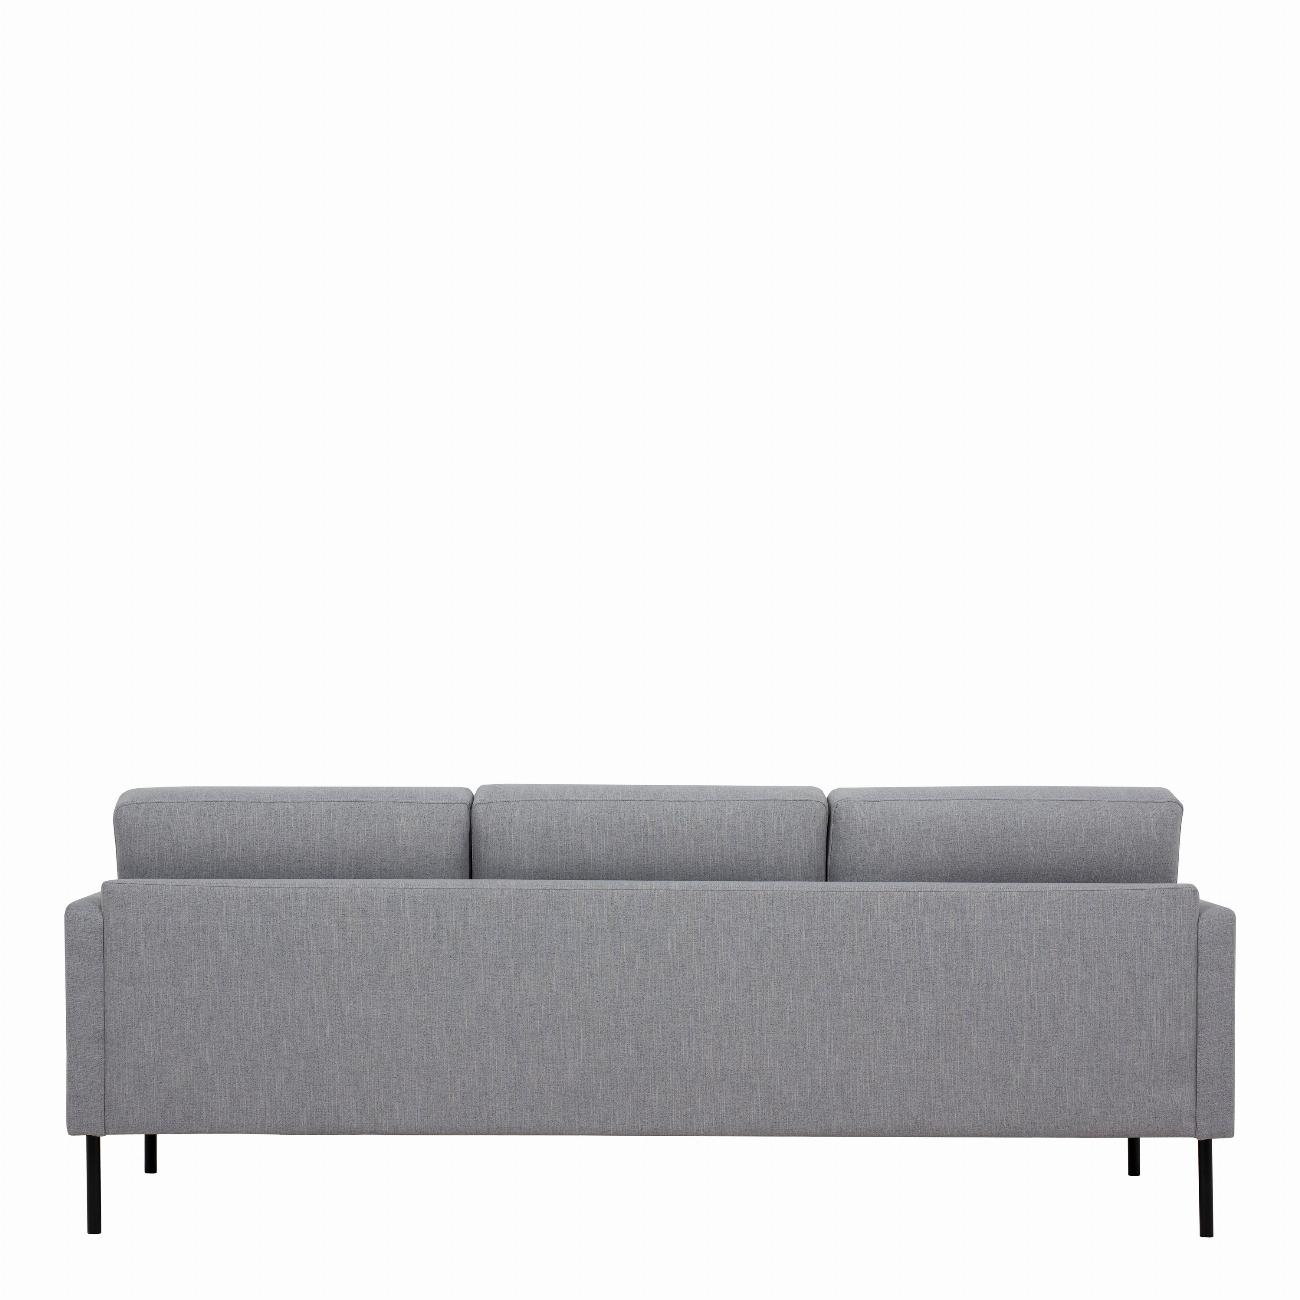 Larvik 3 Seater Sofa - Grey, Black Legs